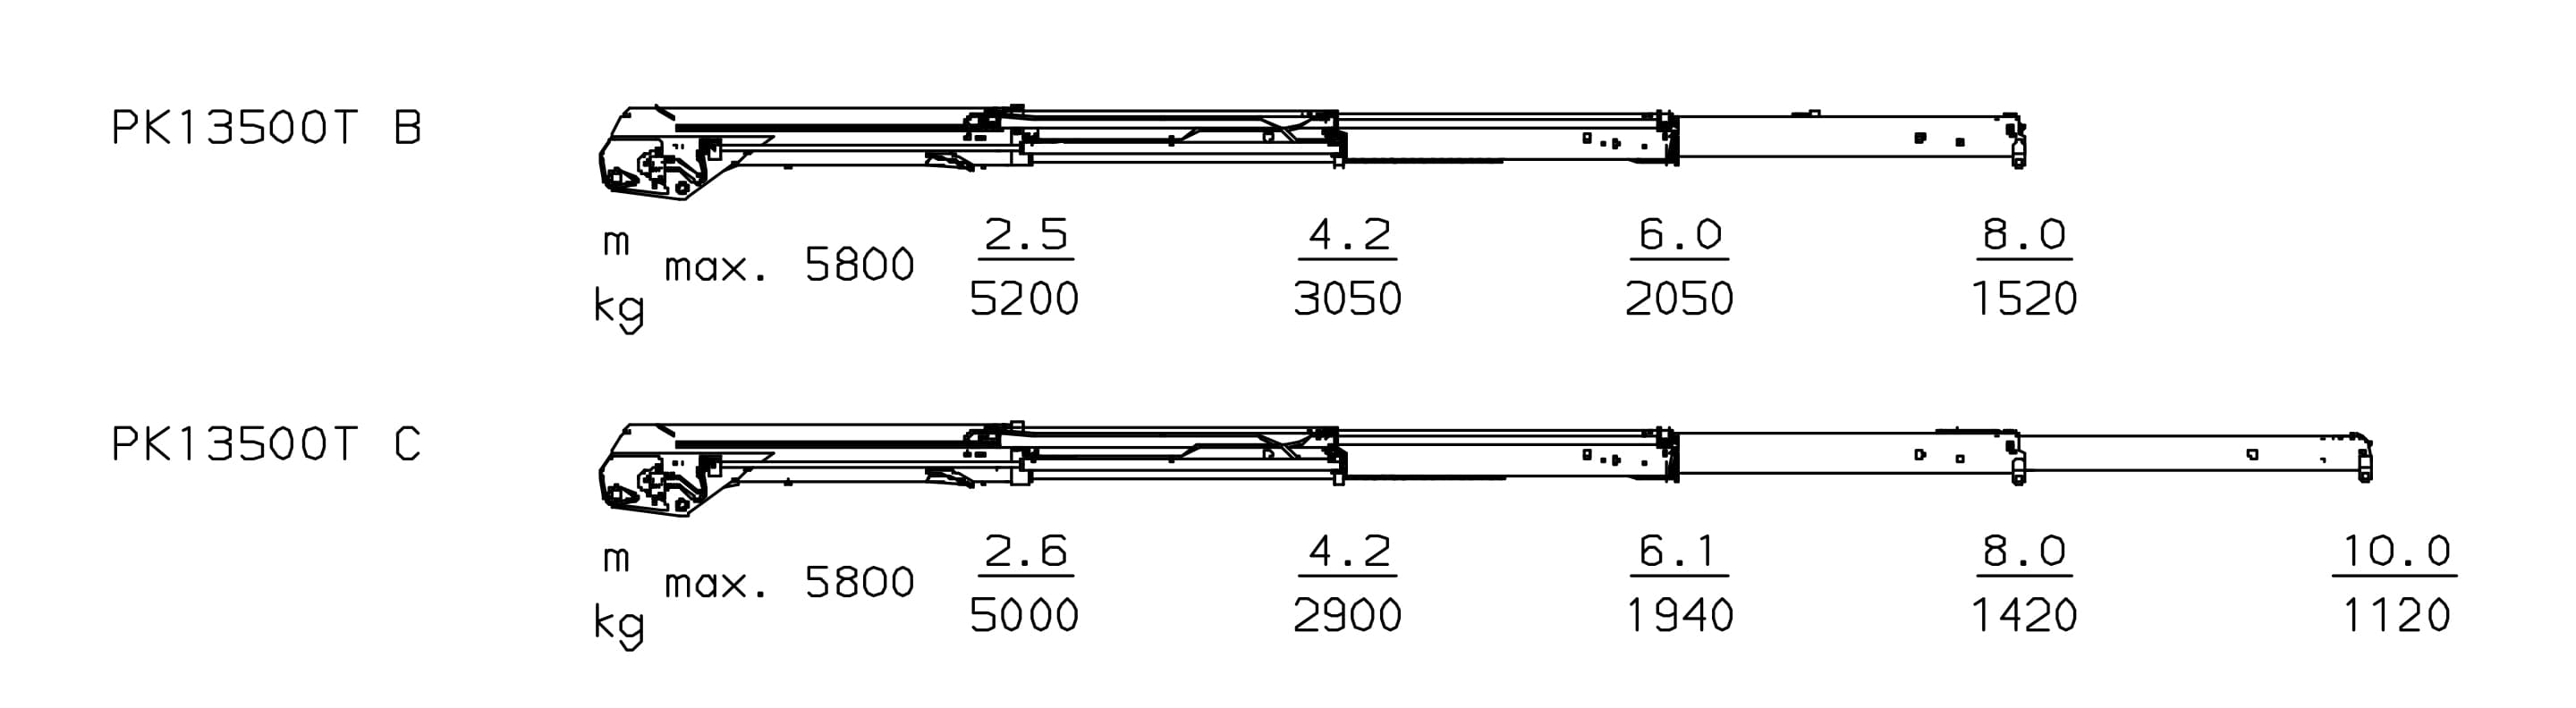 Схема грузоподъемности Palfinger PK 13500 T